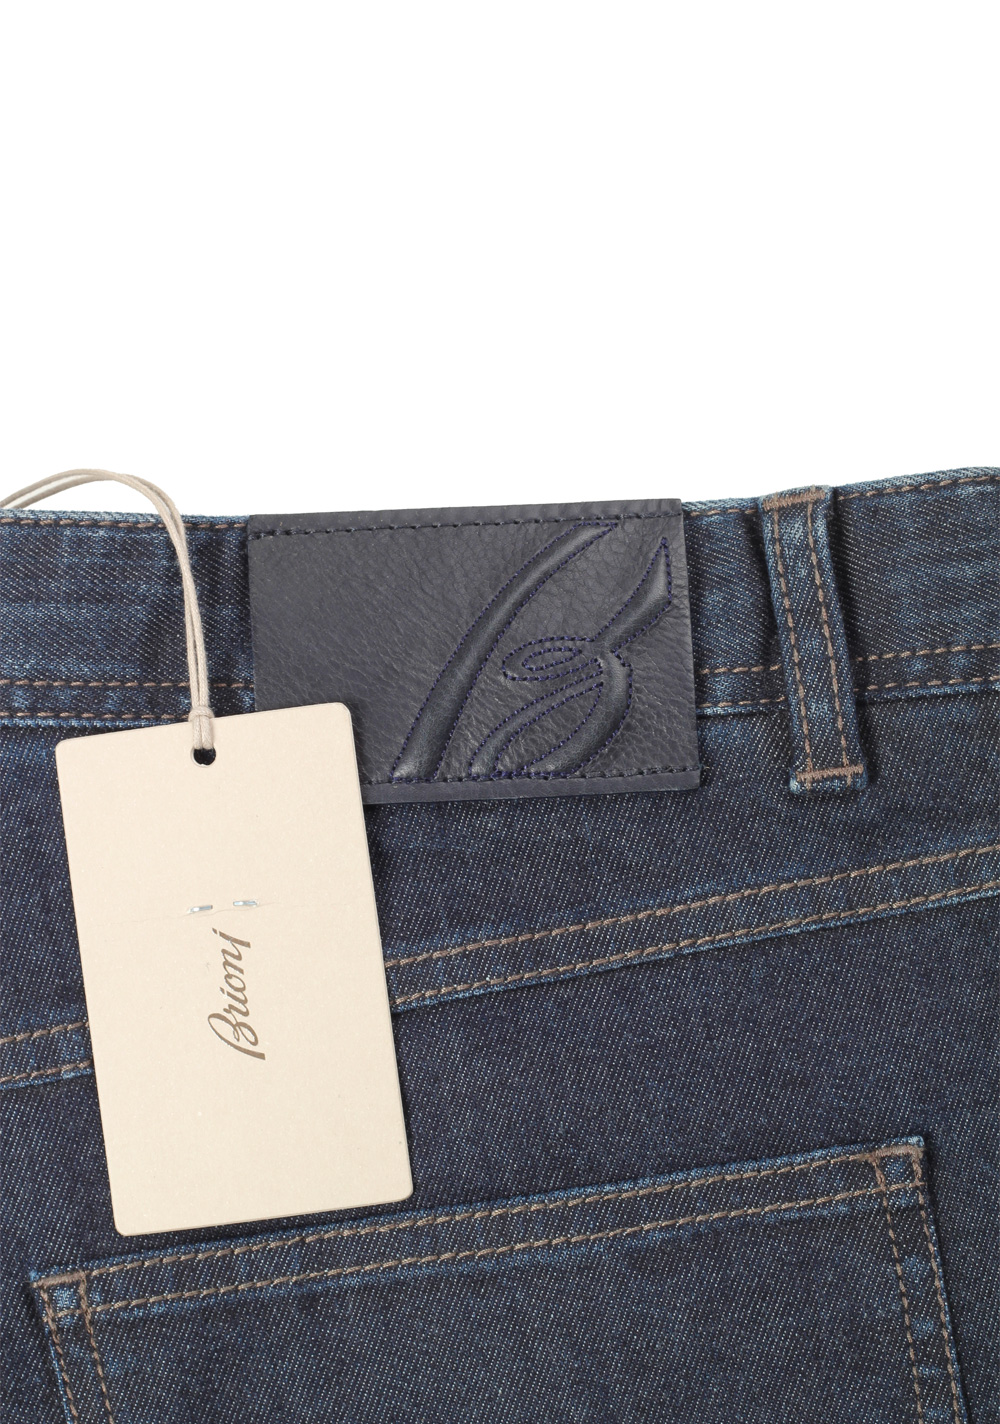 Brioni Blue Jeans Stelvio Trousers Size 52 / 36 U.S. | Costume Limité